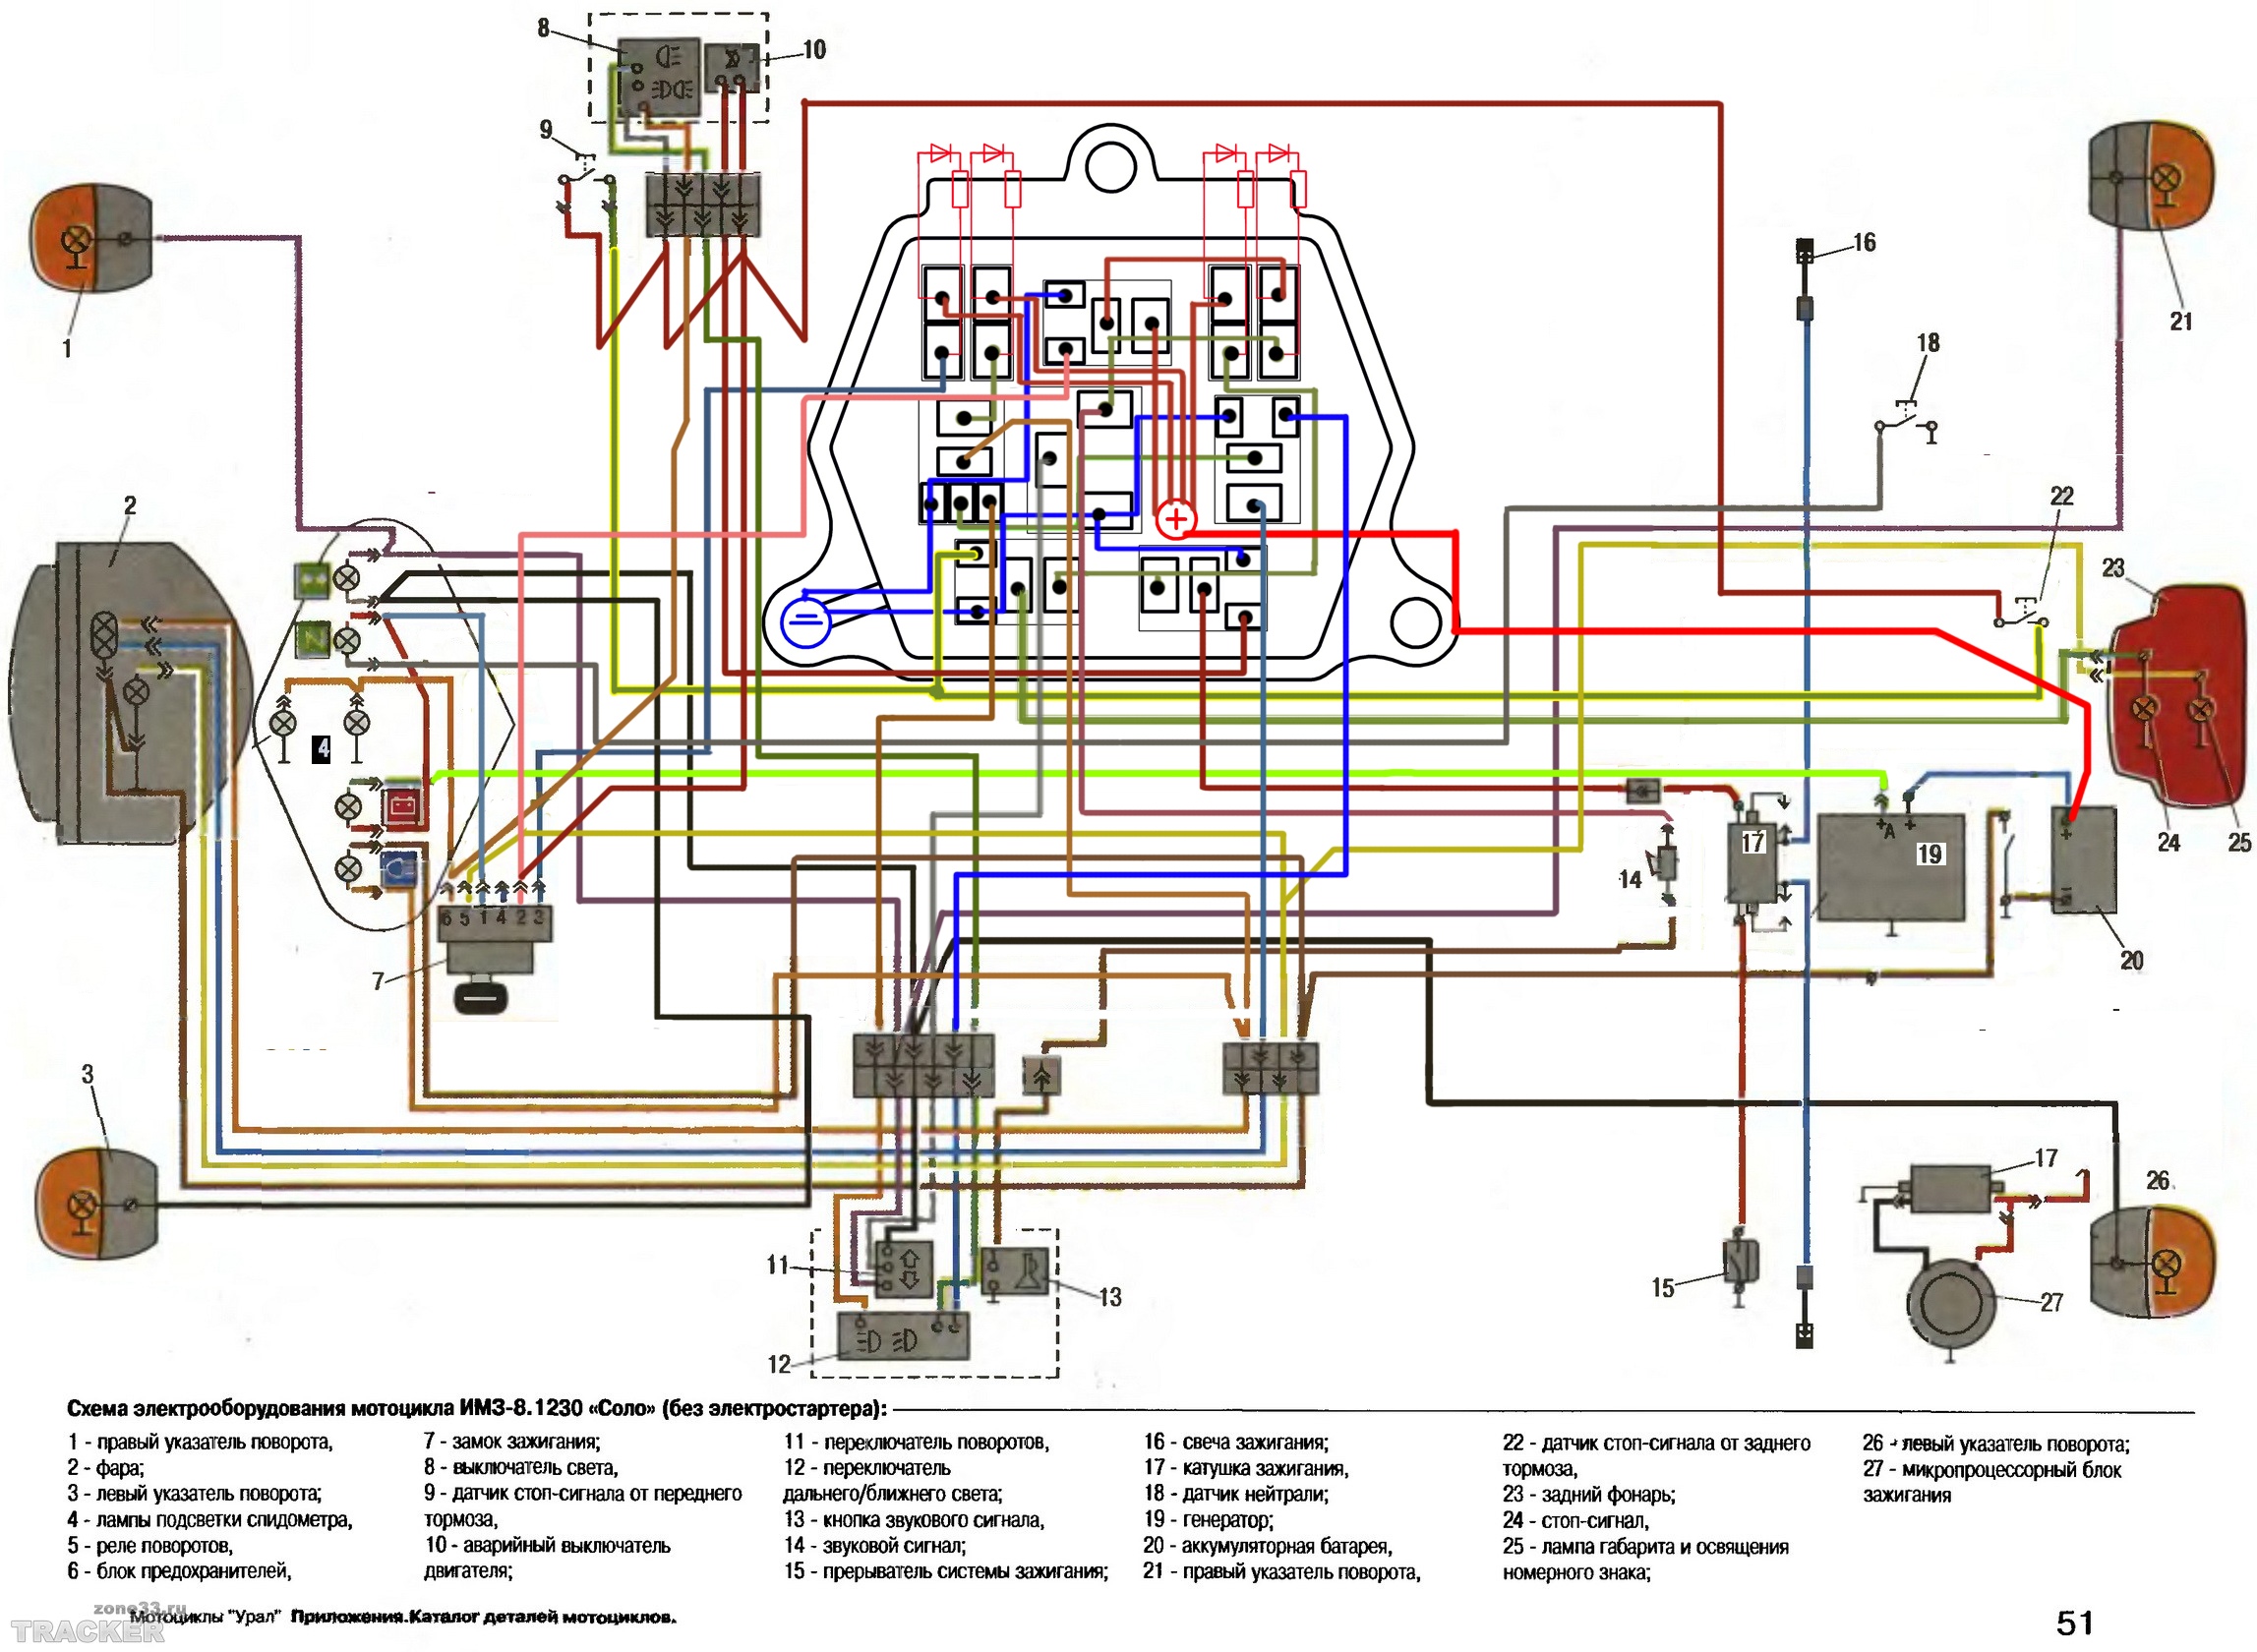 Схема электрооборудования мотоцикла Урал: особенности, типы